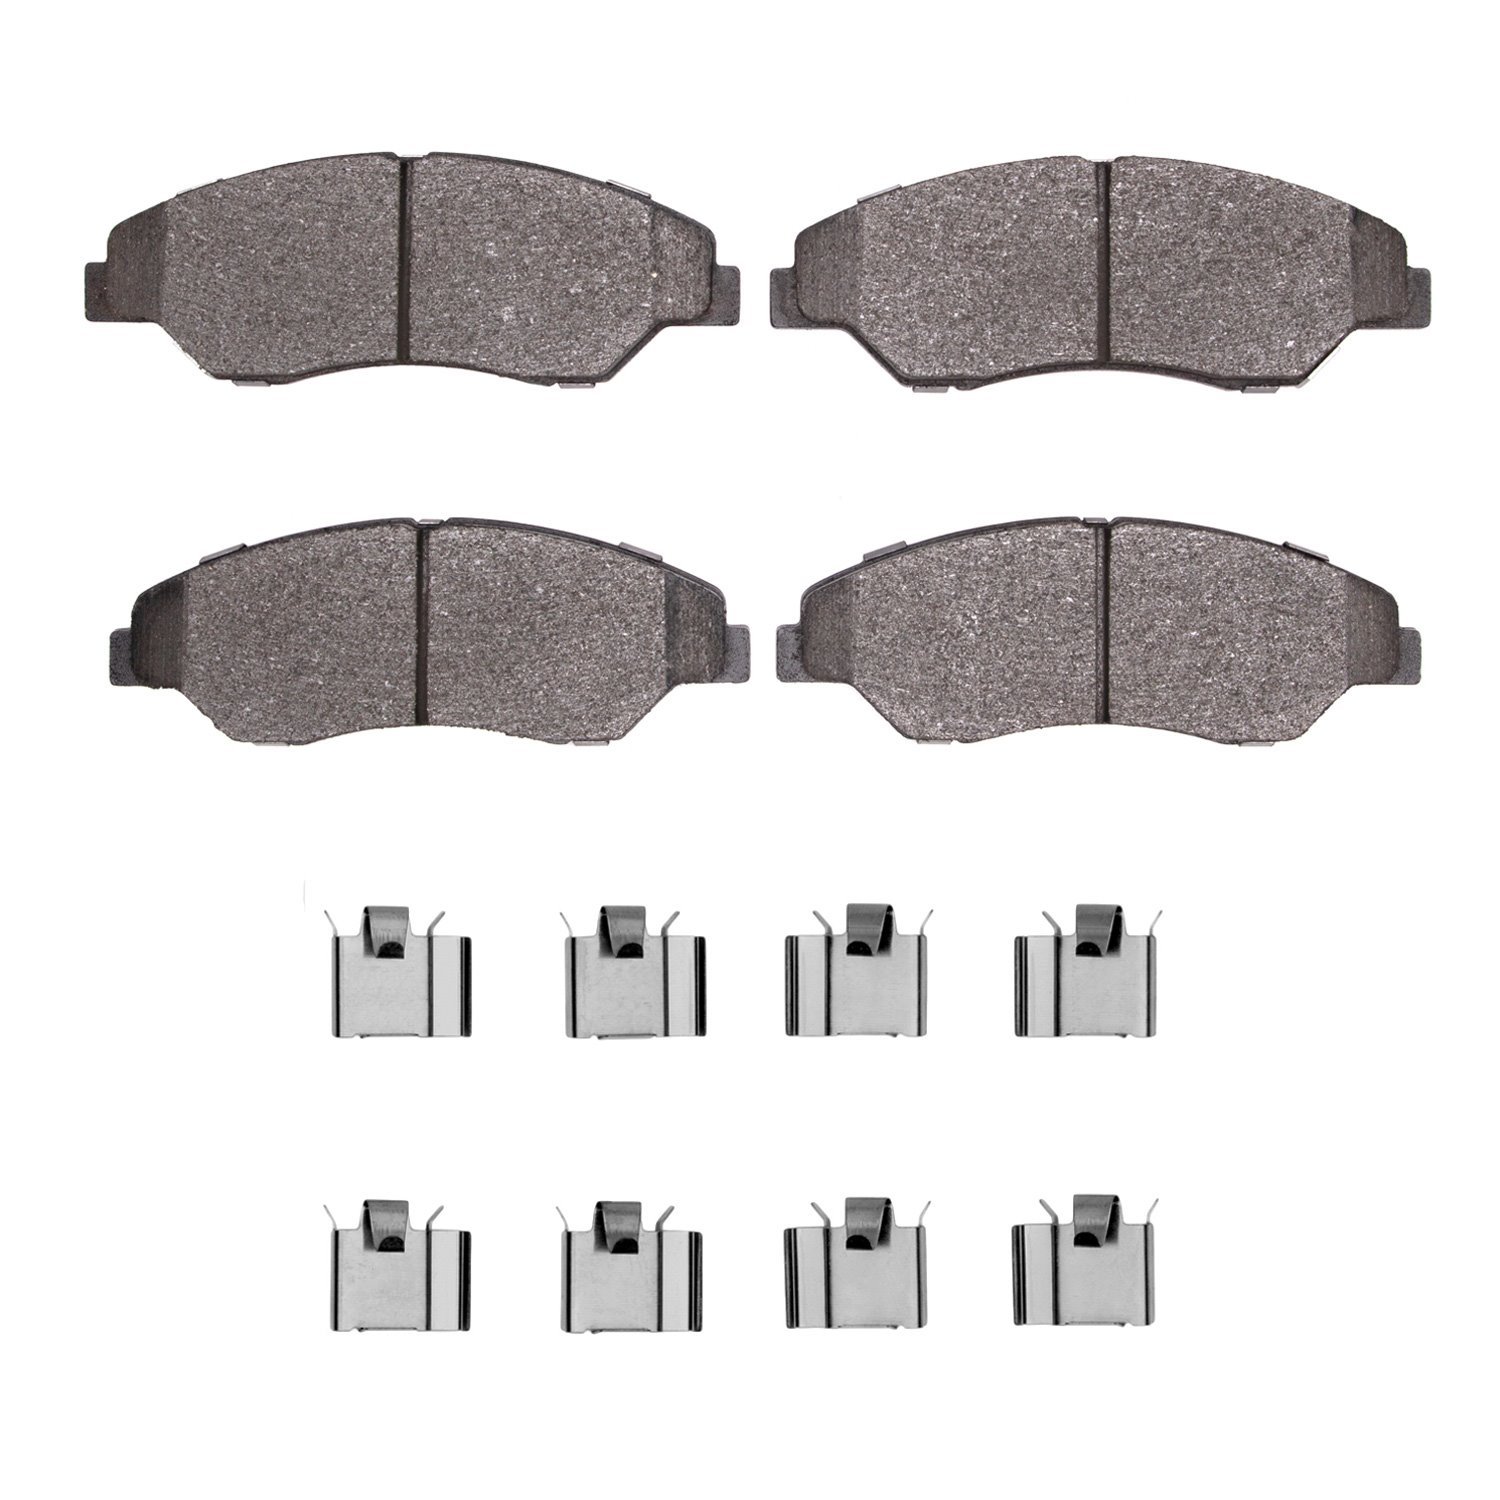 Semi-Metallic Brake Pads & Hardware Kit, 1998-2002 Kia/Hyundai/Genesis, Position: Front